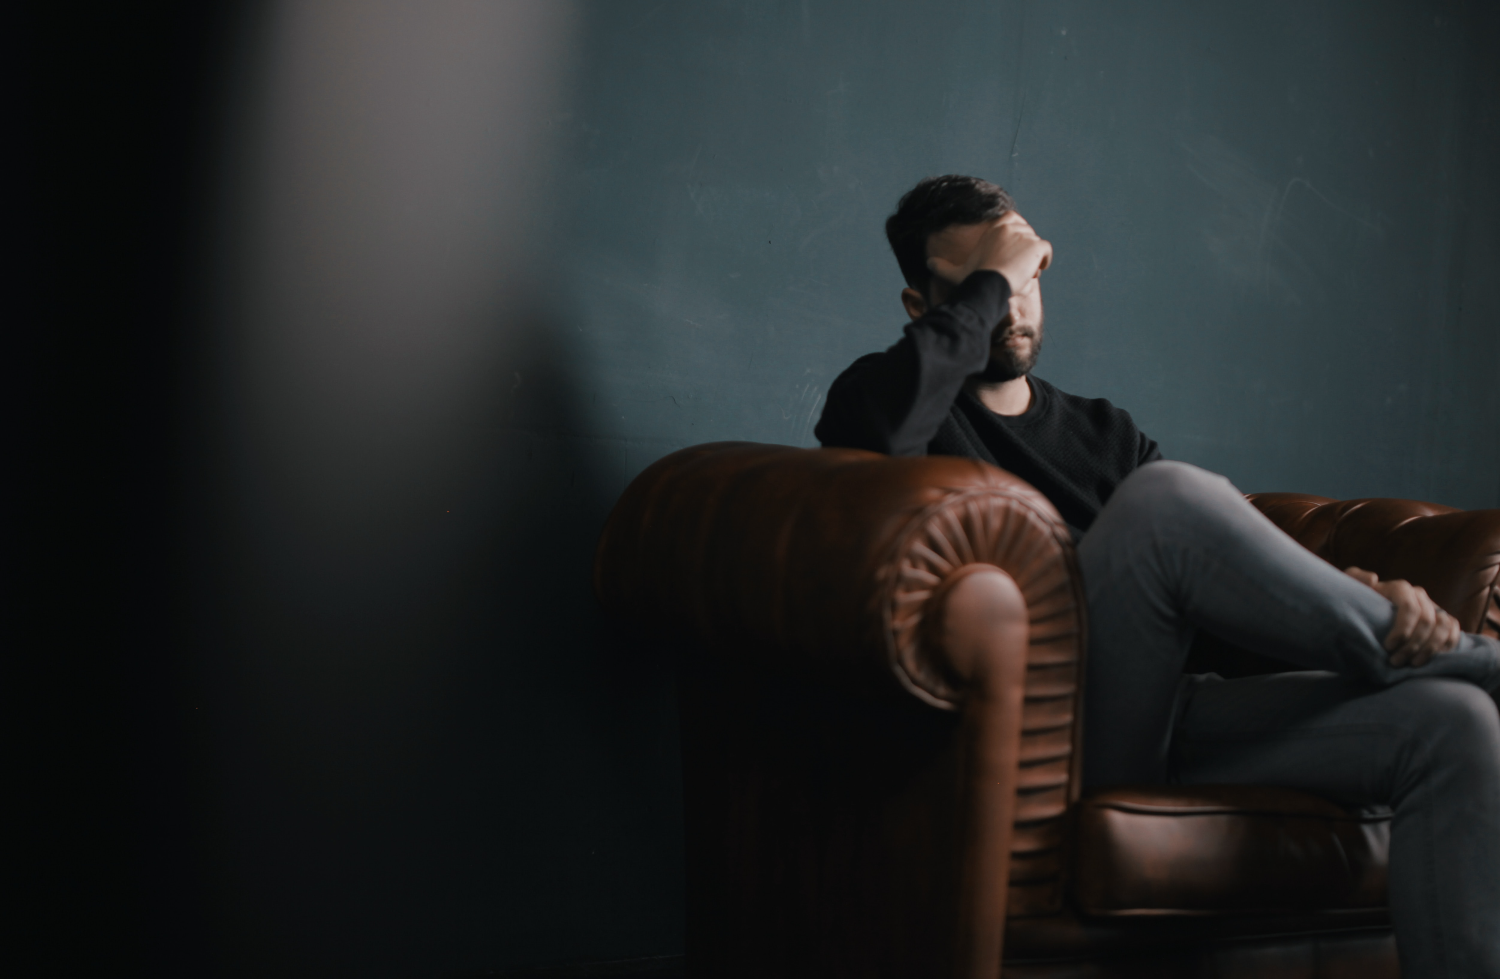 Imagem de um homem sentado em um sofá, usando uma blusa preta e calça cinza. Ele está preocupado, é o que indica a sua expressão facial